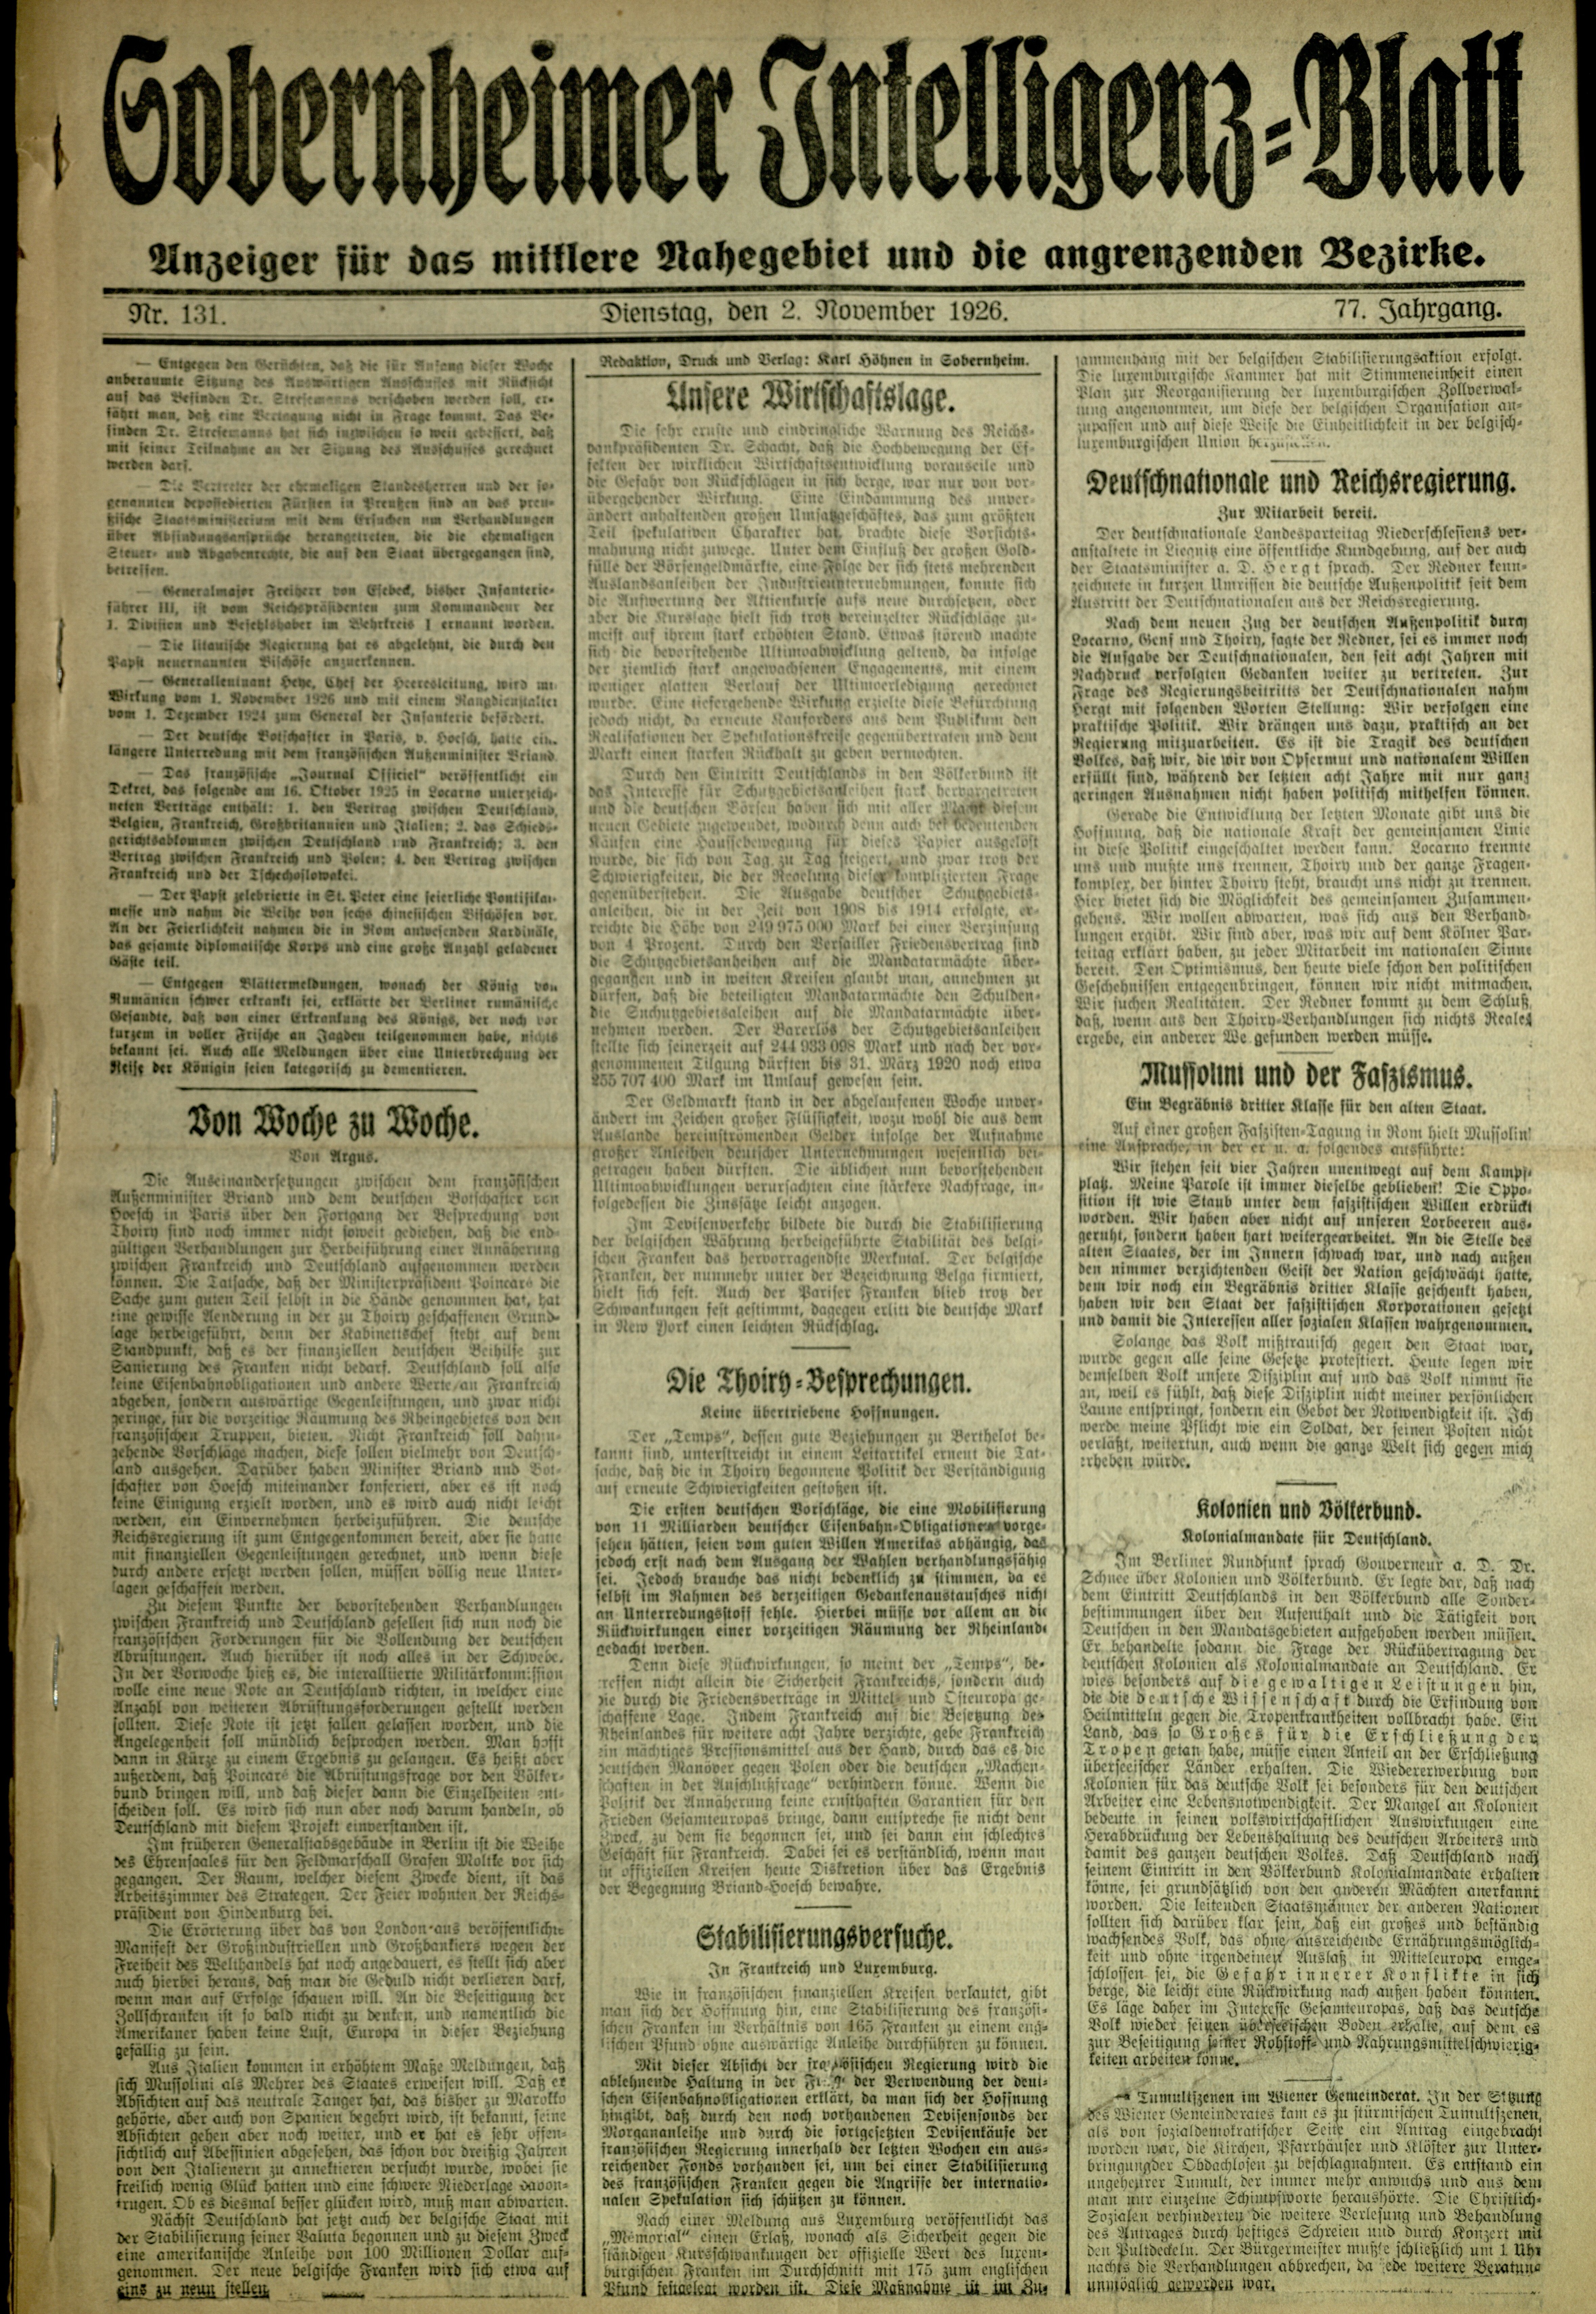 Zeitung: Sobernheimer Intelligenzblatt; November 1926, Jg. 73 Nr. 131 (Heimatmuseum Bad Sobernheim CC BY-NC-SA)